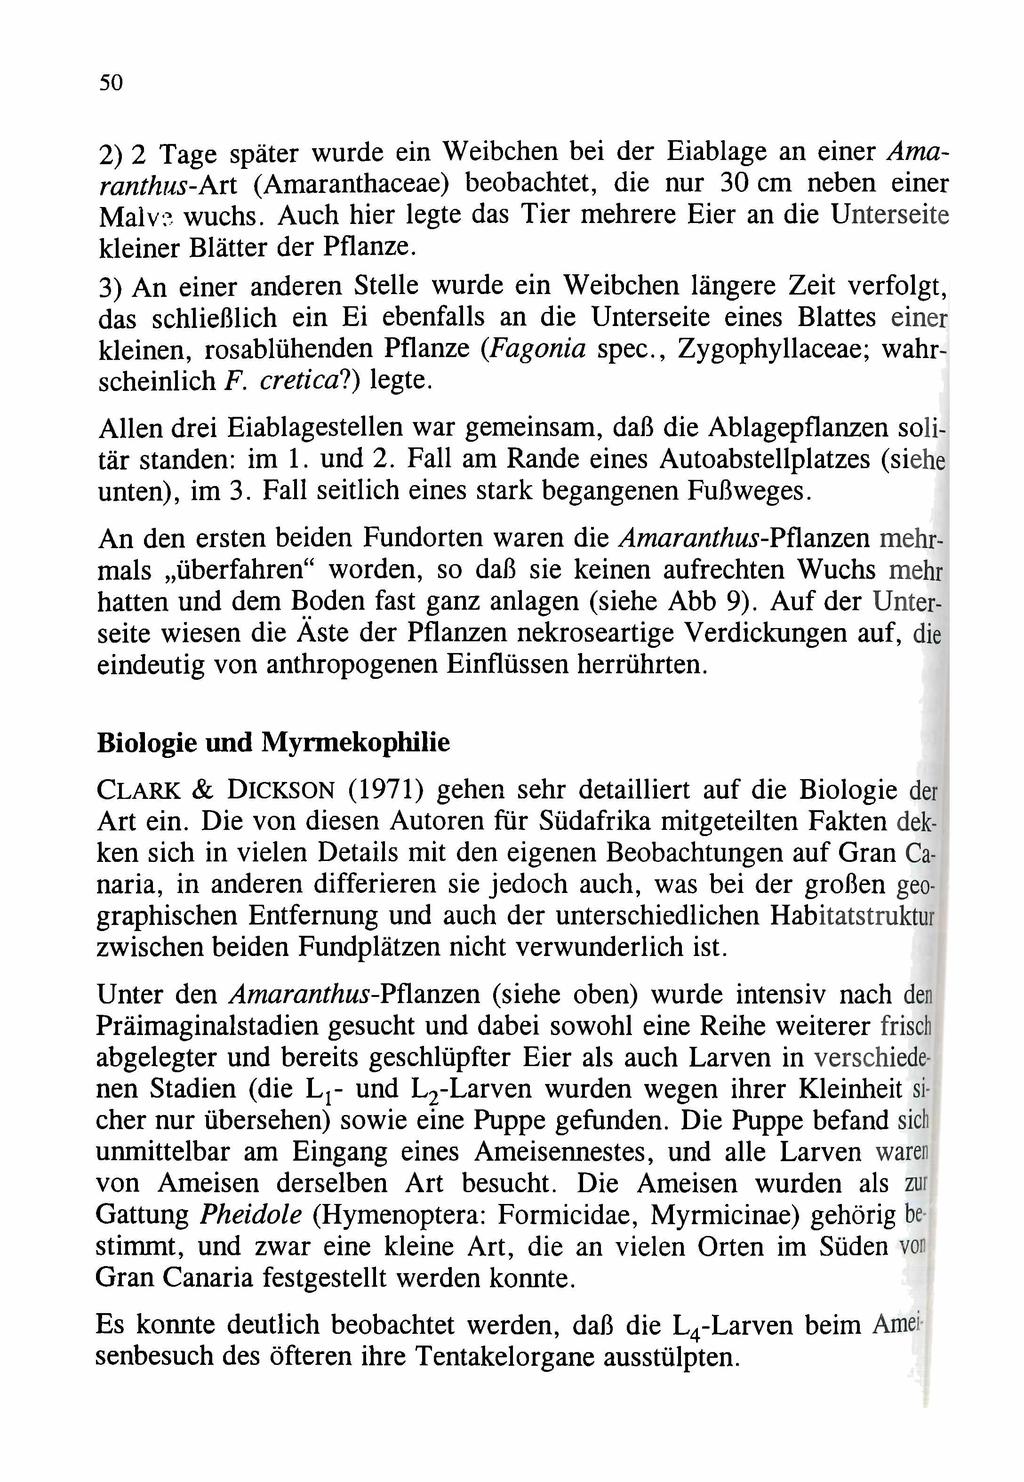 Entomologischer Verein Apollo e.v. Frankfurt am Main; download unter www.zobodat.